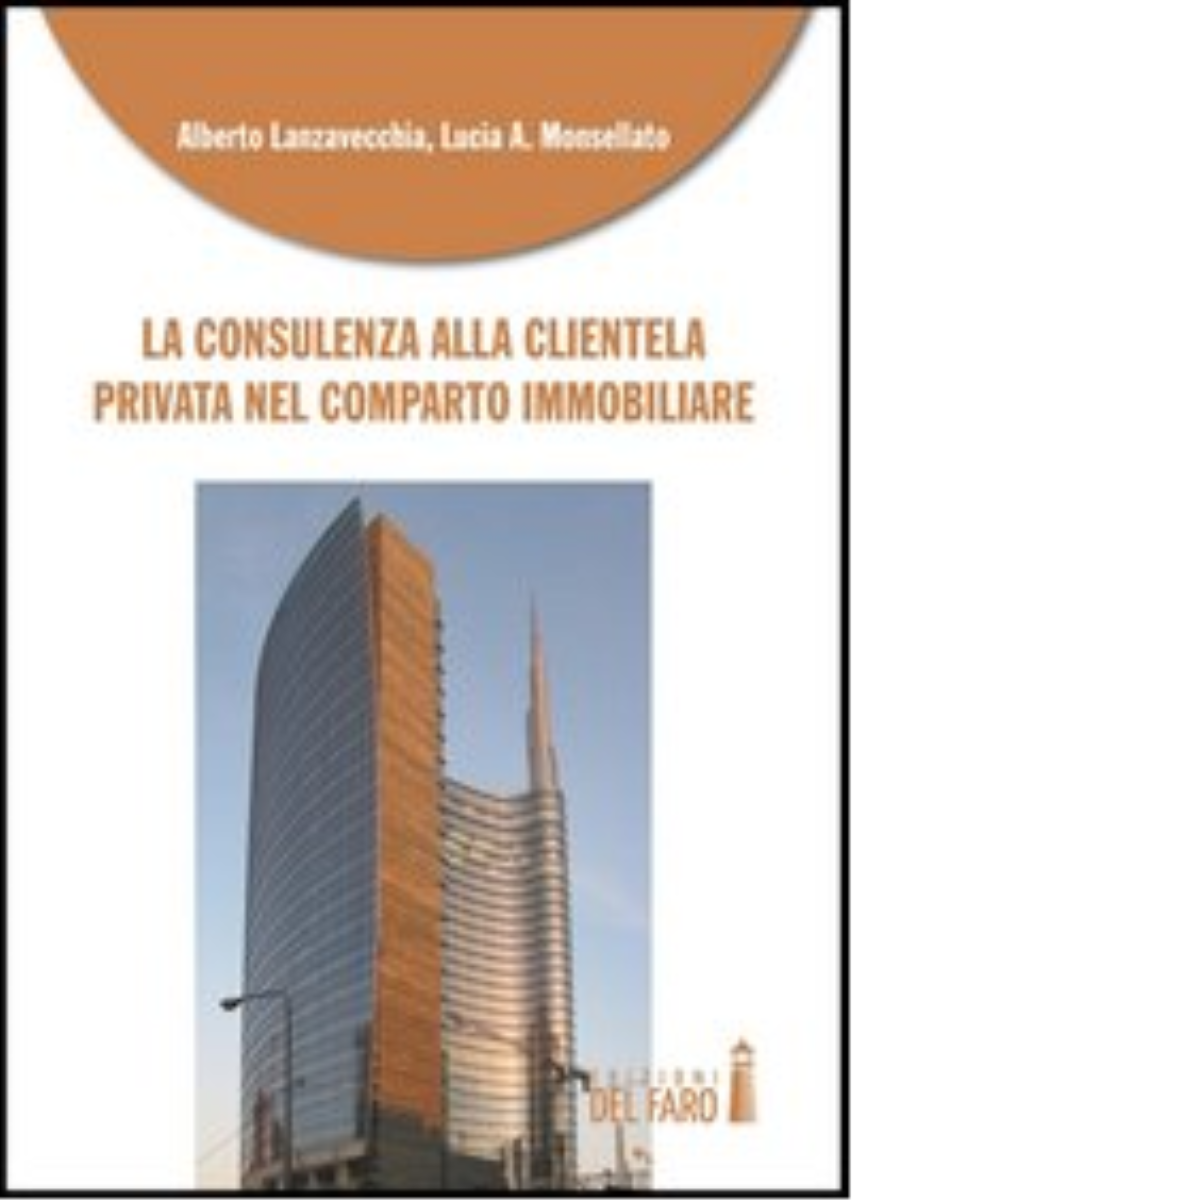 La consulenza alla clientela privata nel comparto immobiliare - Del Faro, 2013 libro usato